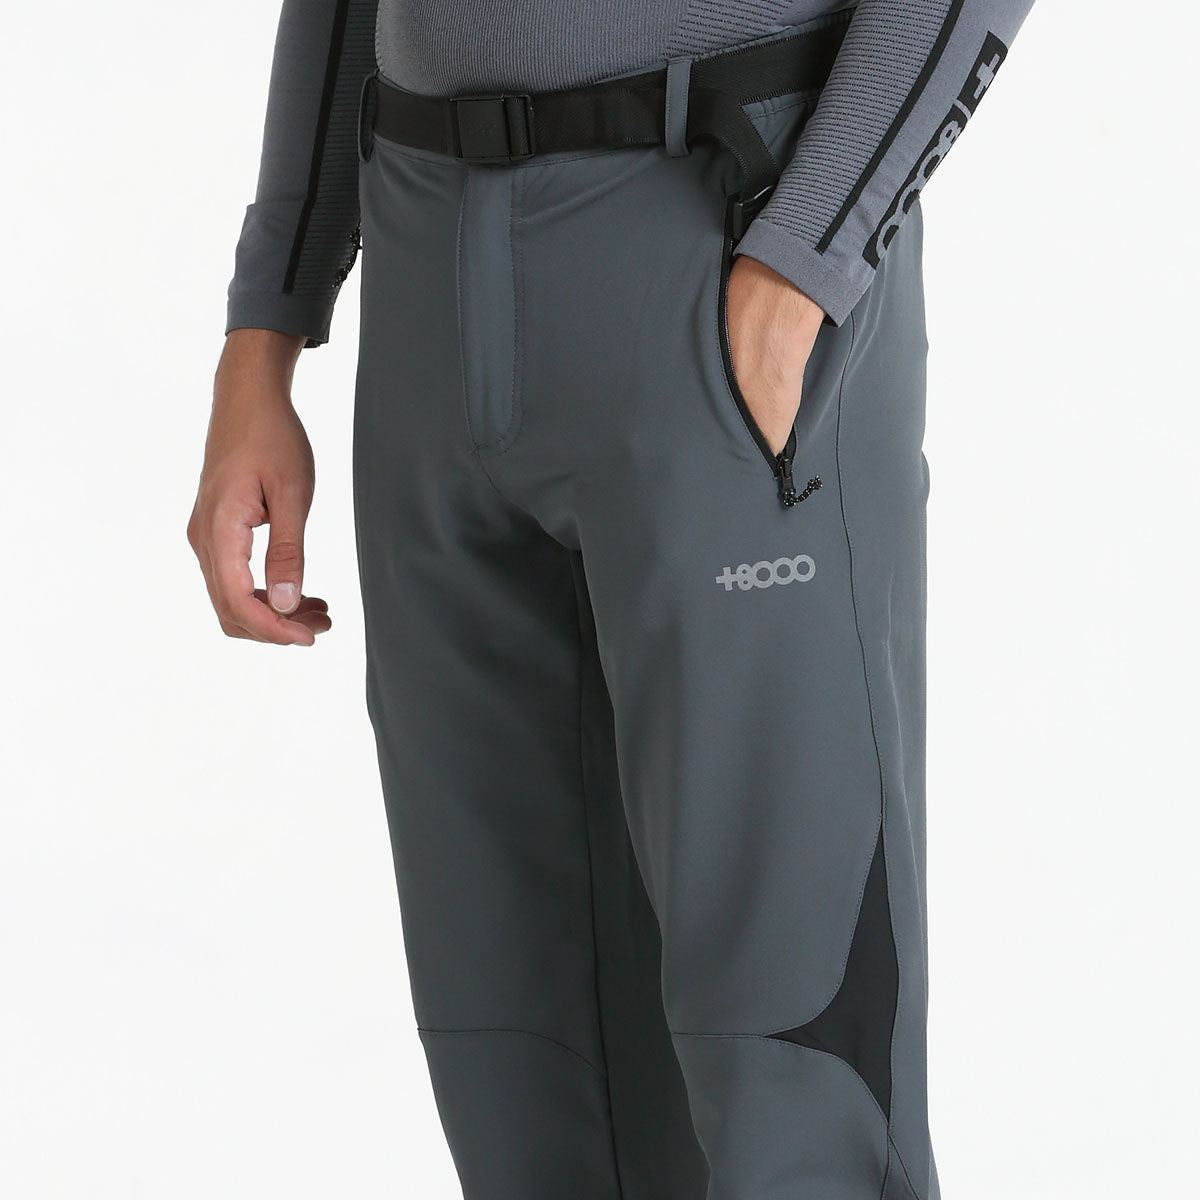 Pantalón hombre +8000 TARAVILLO (2 COLORES, antracita - negro)